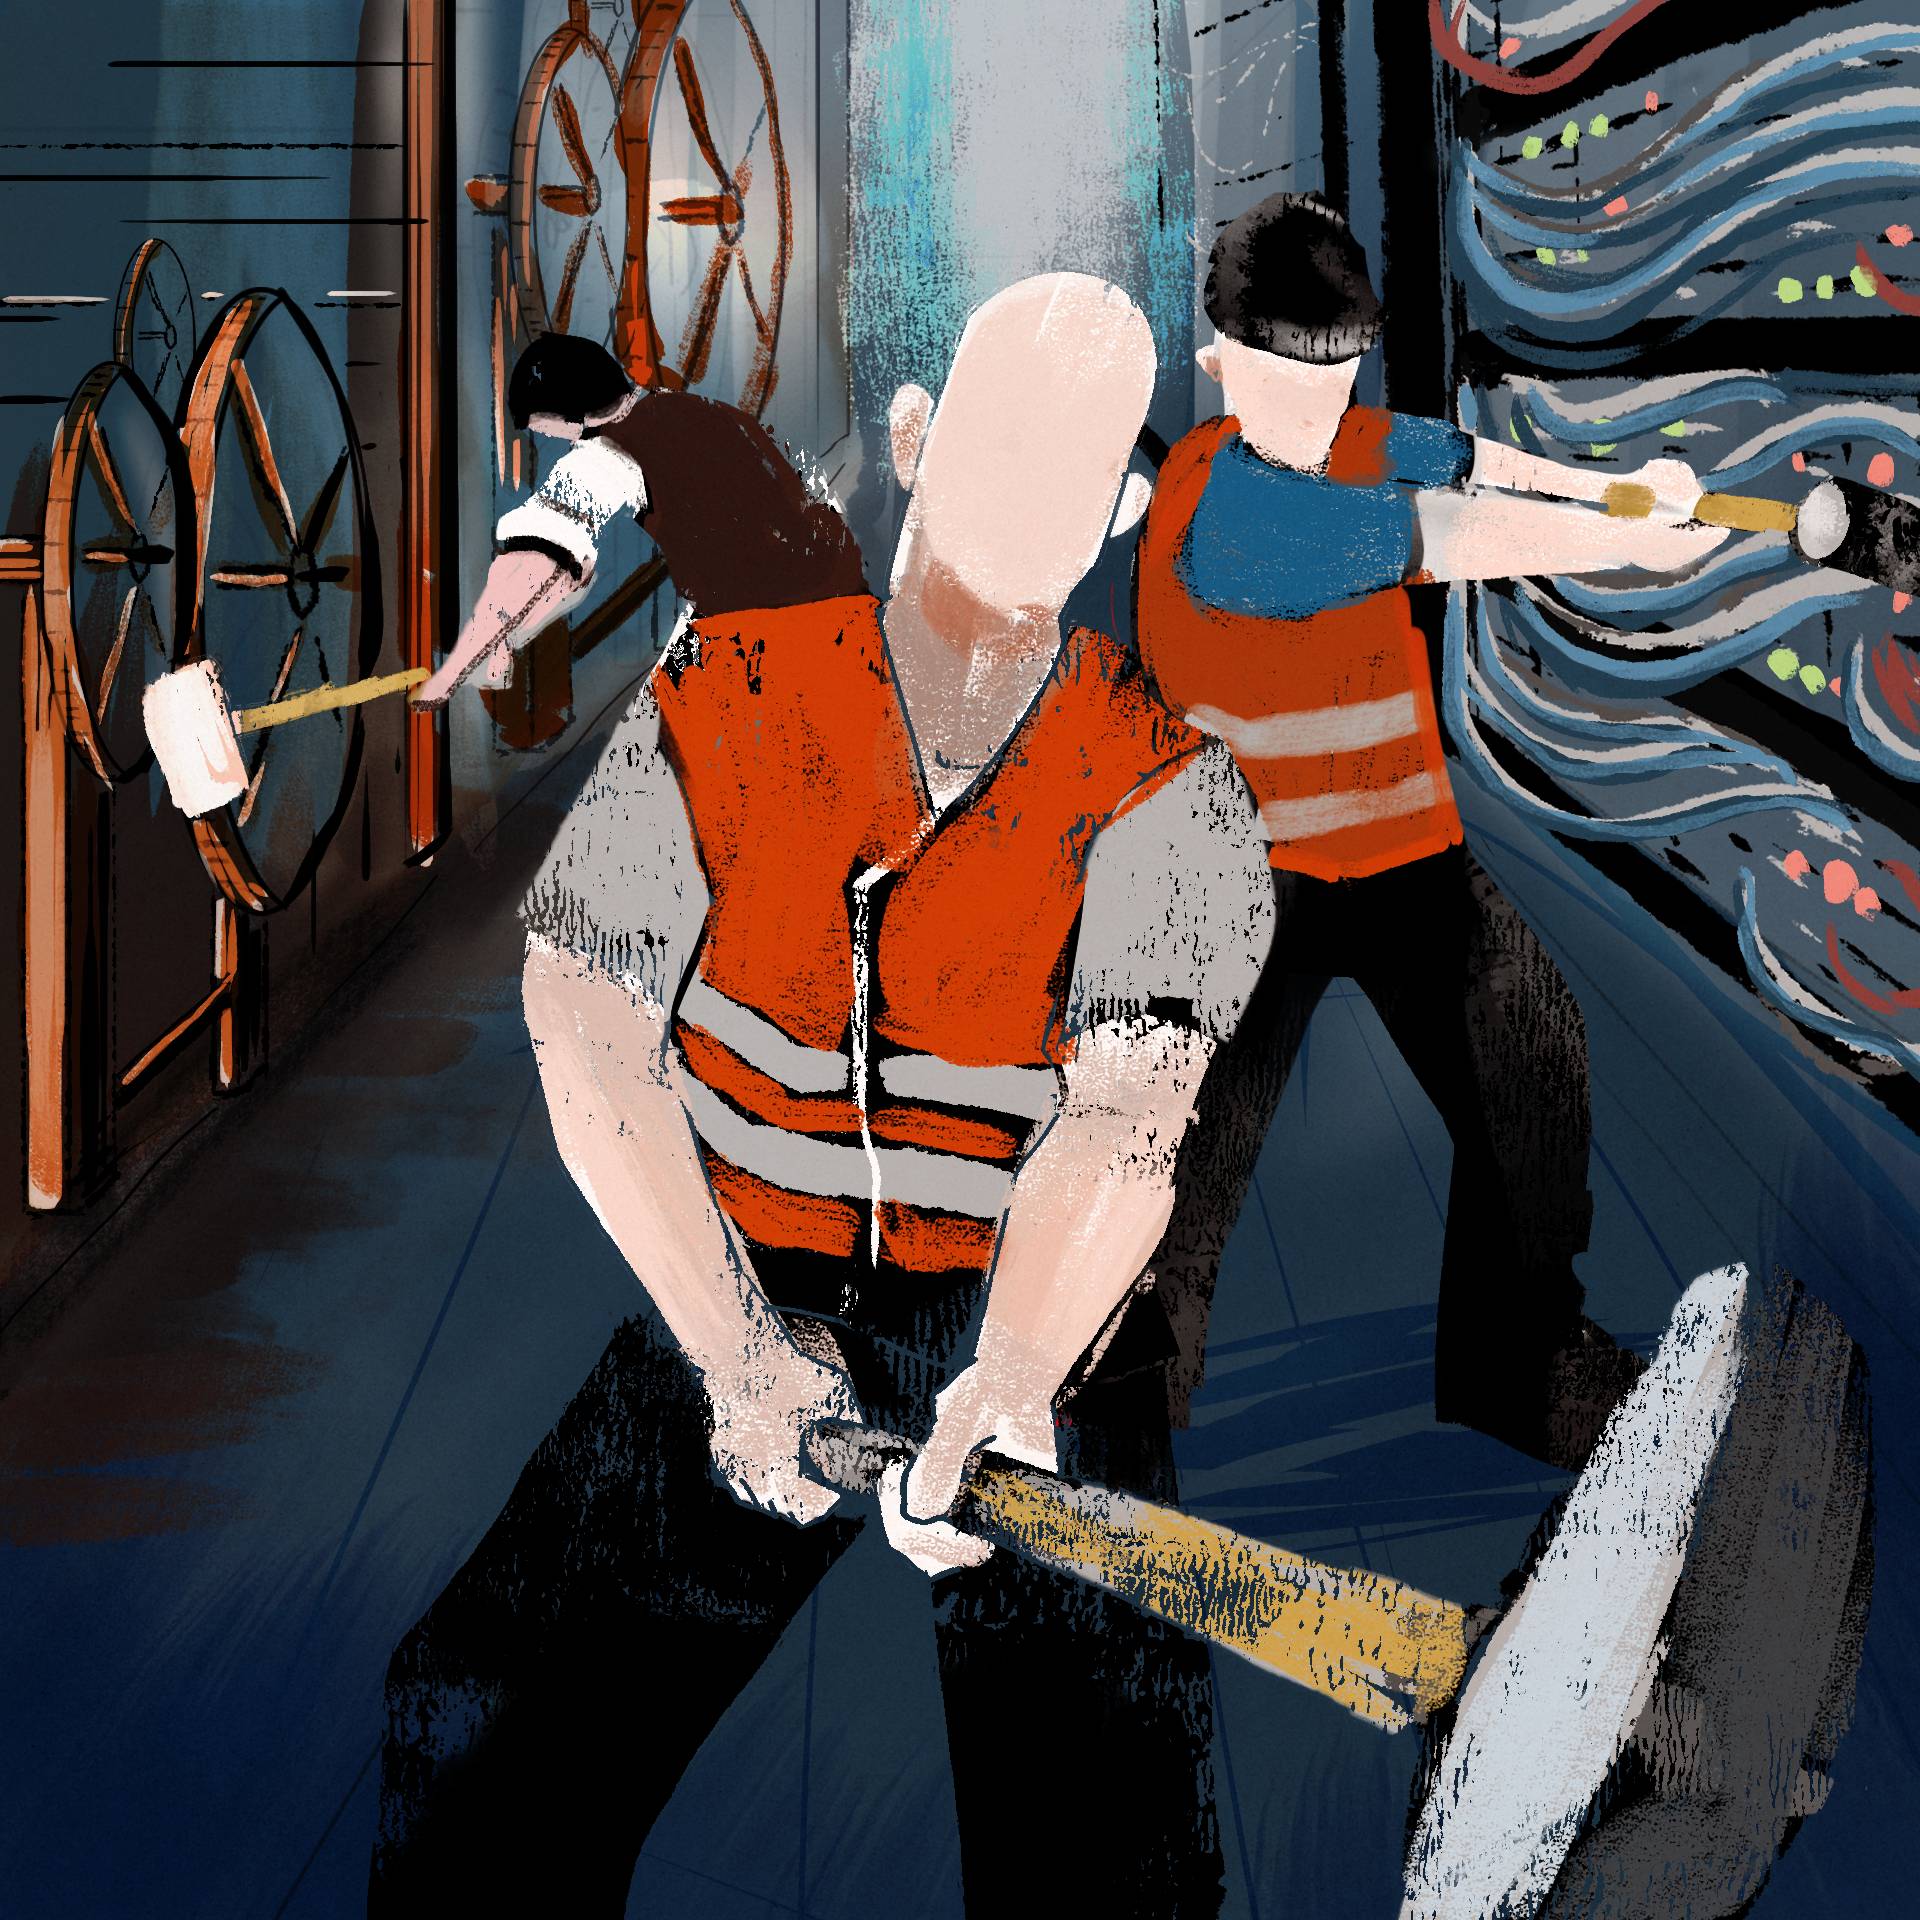 Ilustracja - robotnicy z ciężkimi narzędziami niszczący maszyny - na pierwszym planie dwóch w roboczych kamizelkach odblaskowych, jeden z nich uderza w szafkę pełną serwerów, w tle widać XIX-wiecznego robotnika uderzającego w krosno tkackie młotem